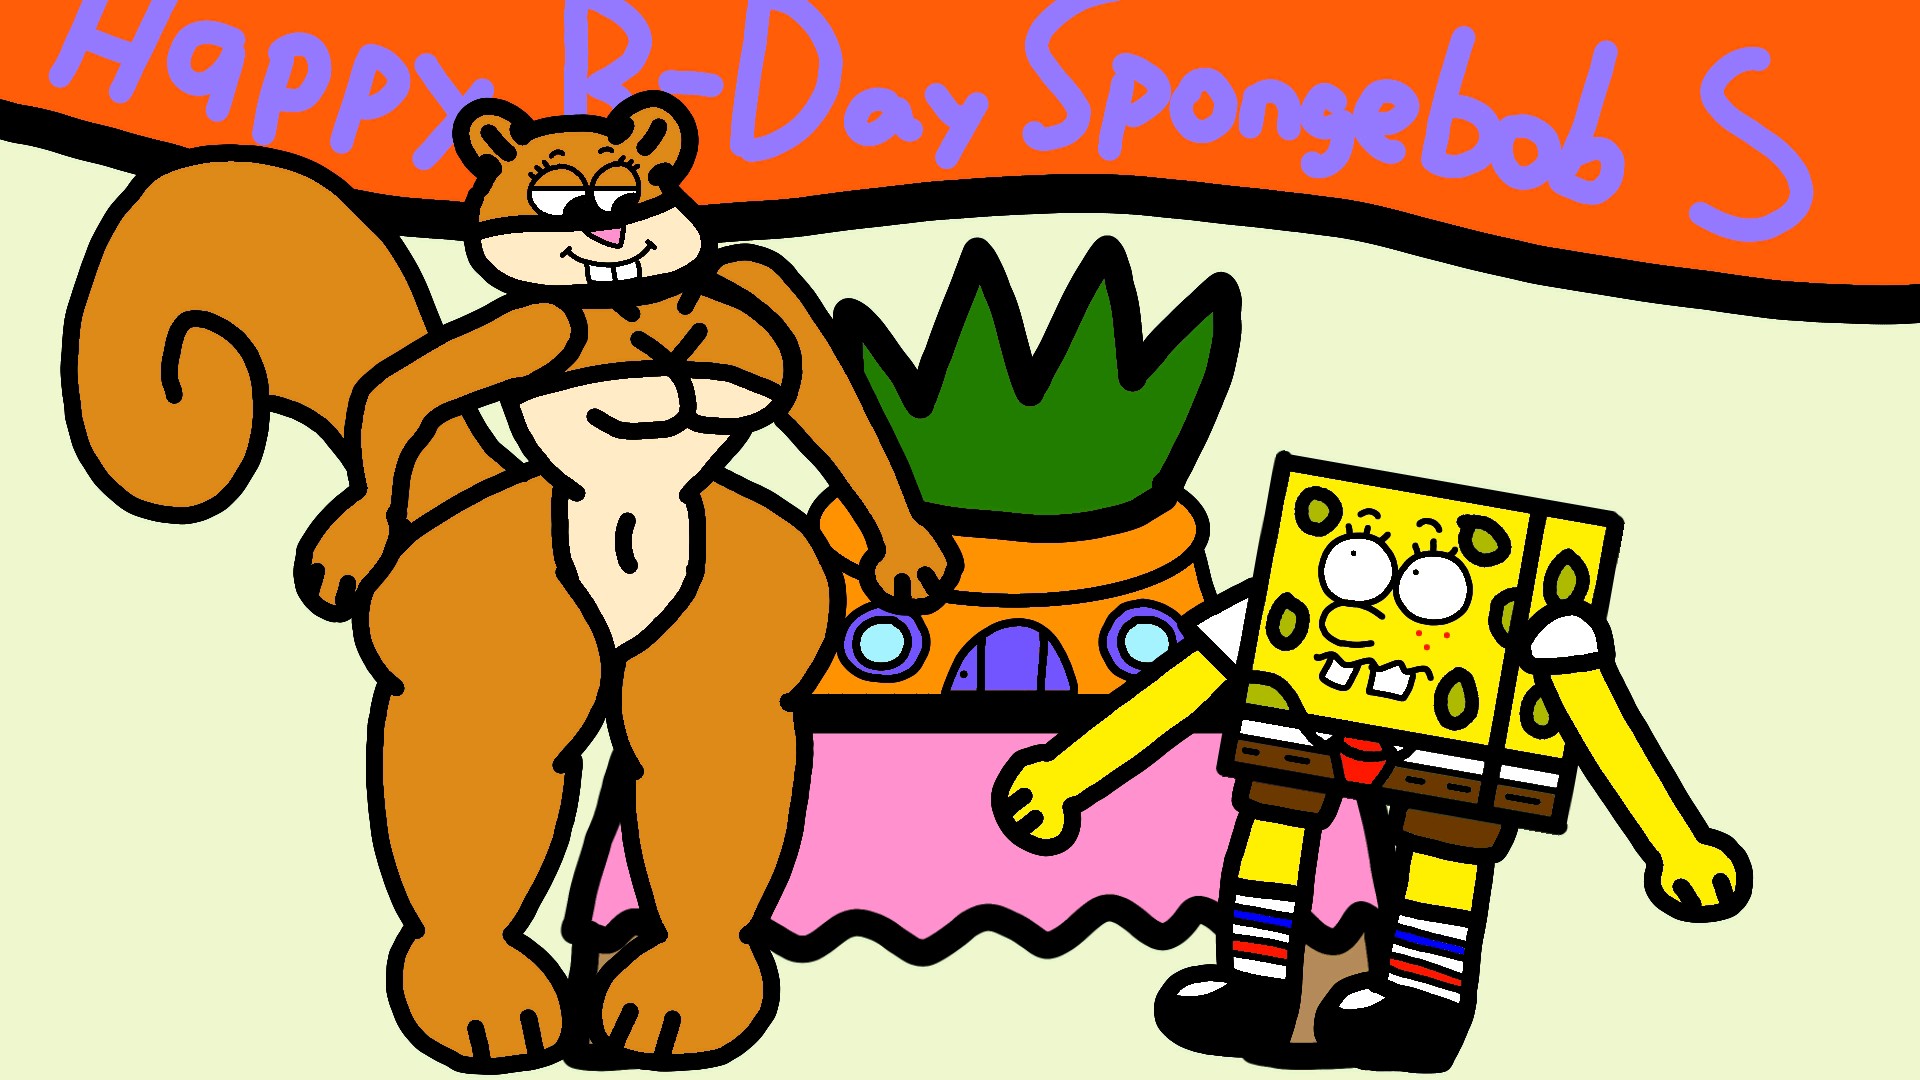 Happy birthday to Spongebob SquarePants     